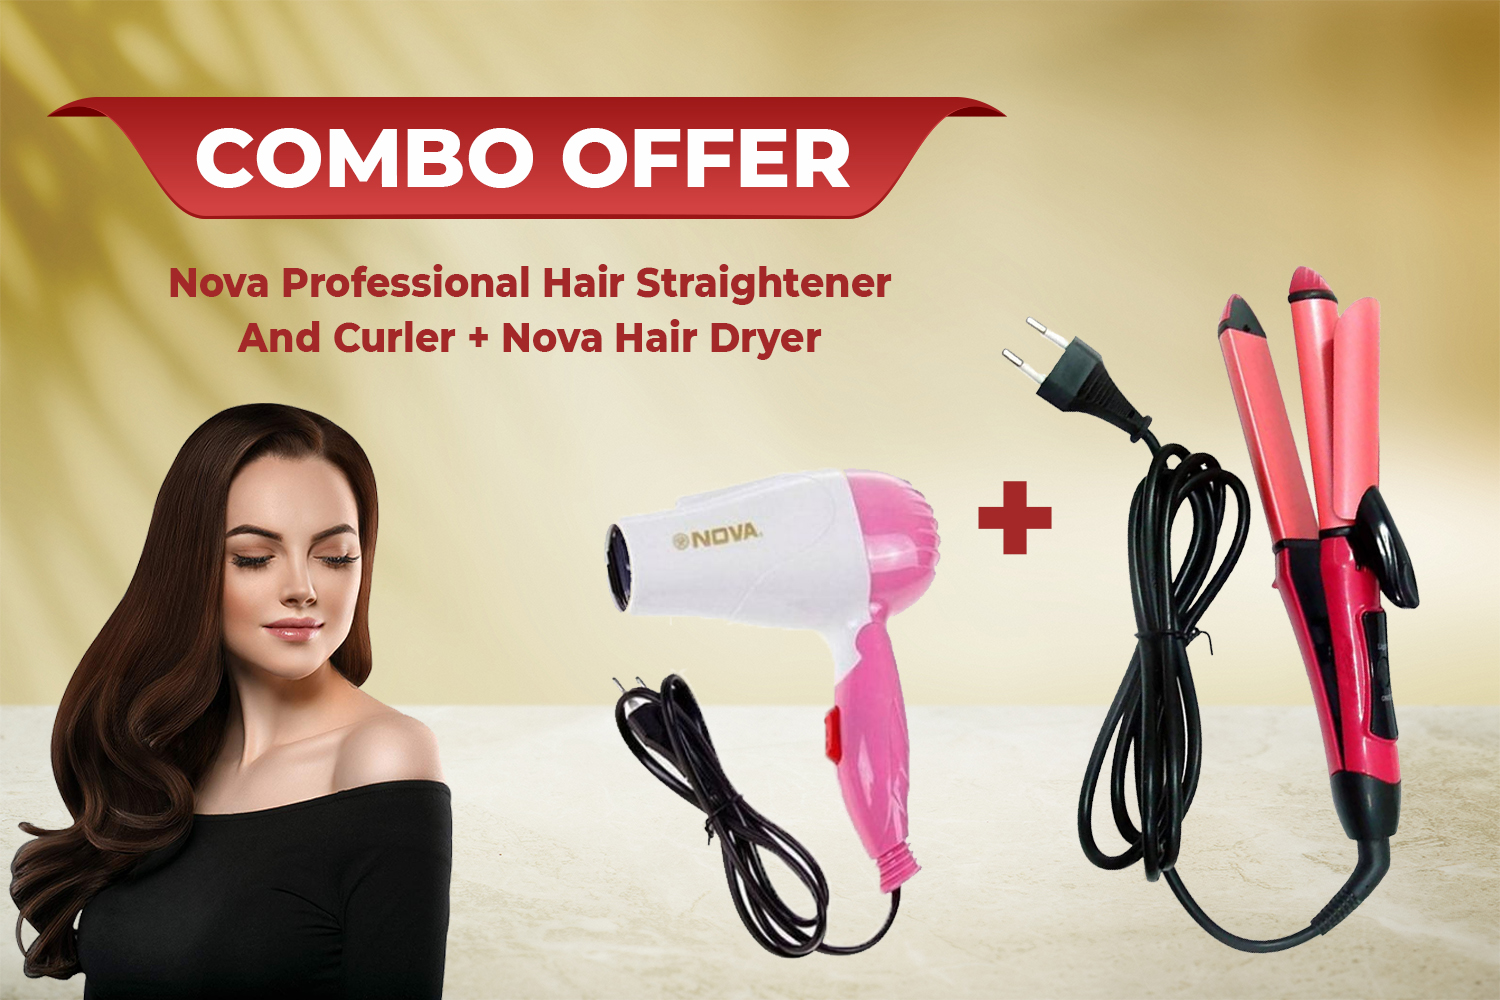 Nova hair dryer + Nova Professional  Hair Straightener and Curler  